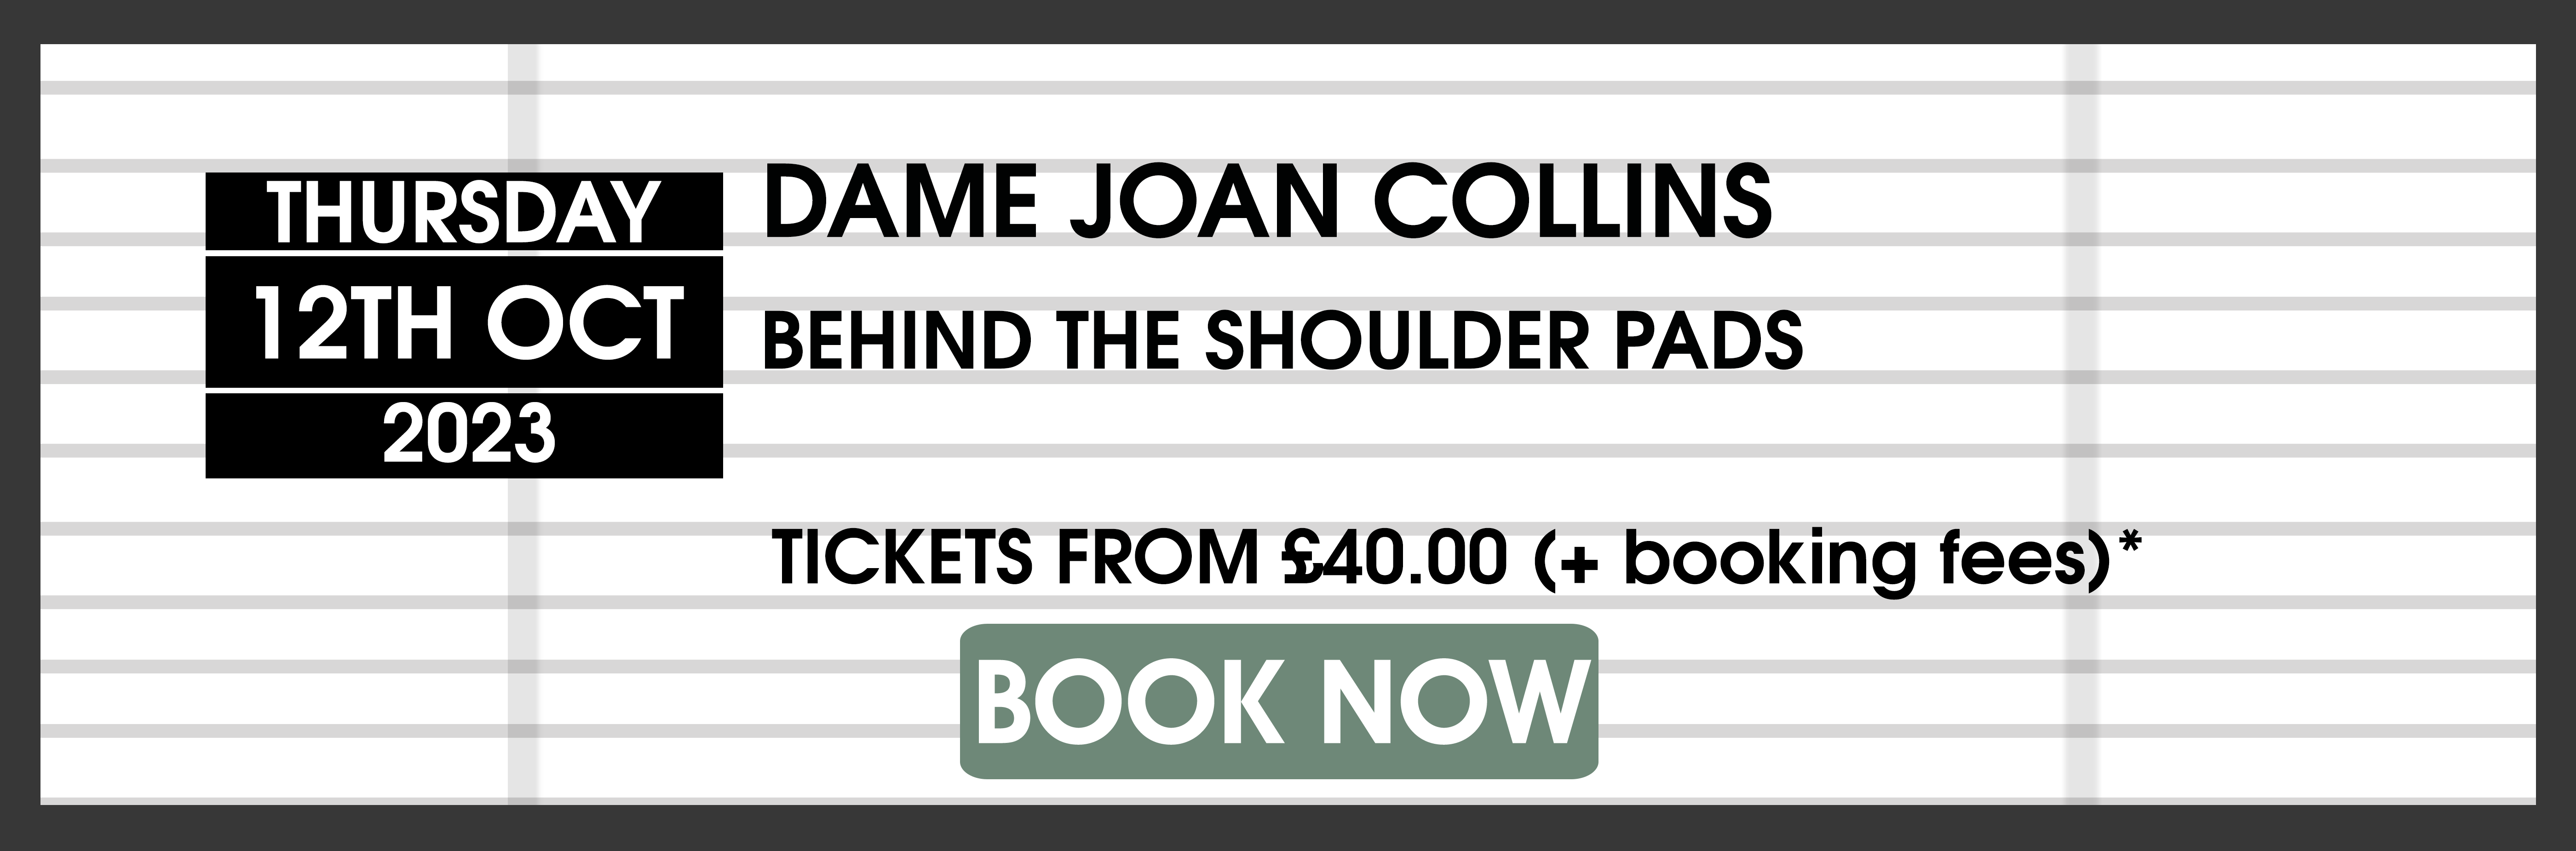 12.10.23 Dame Joan Collins BOO